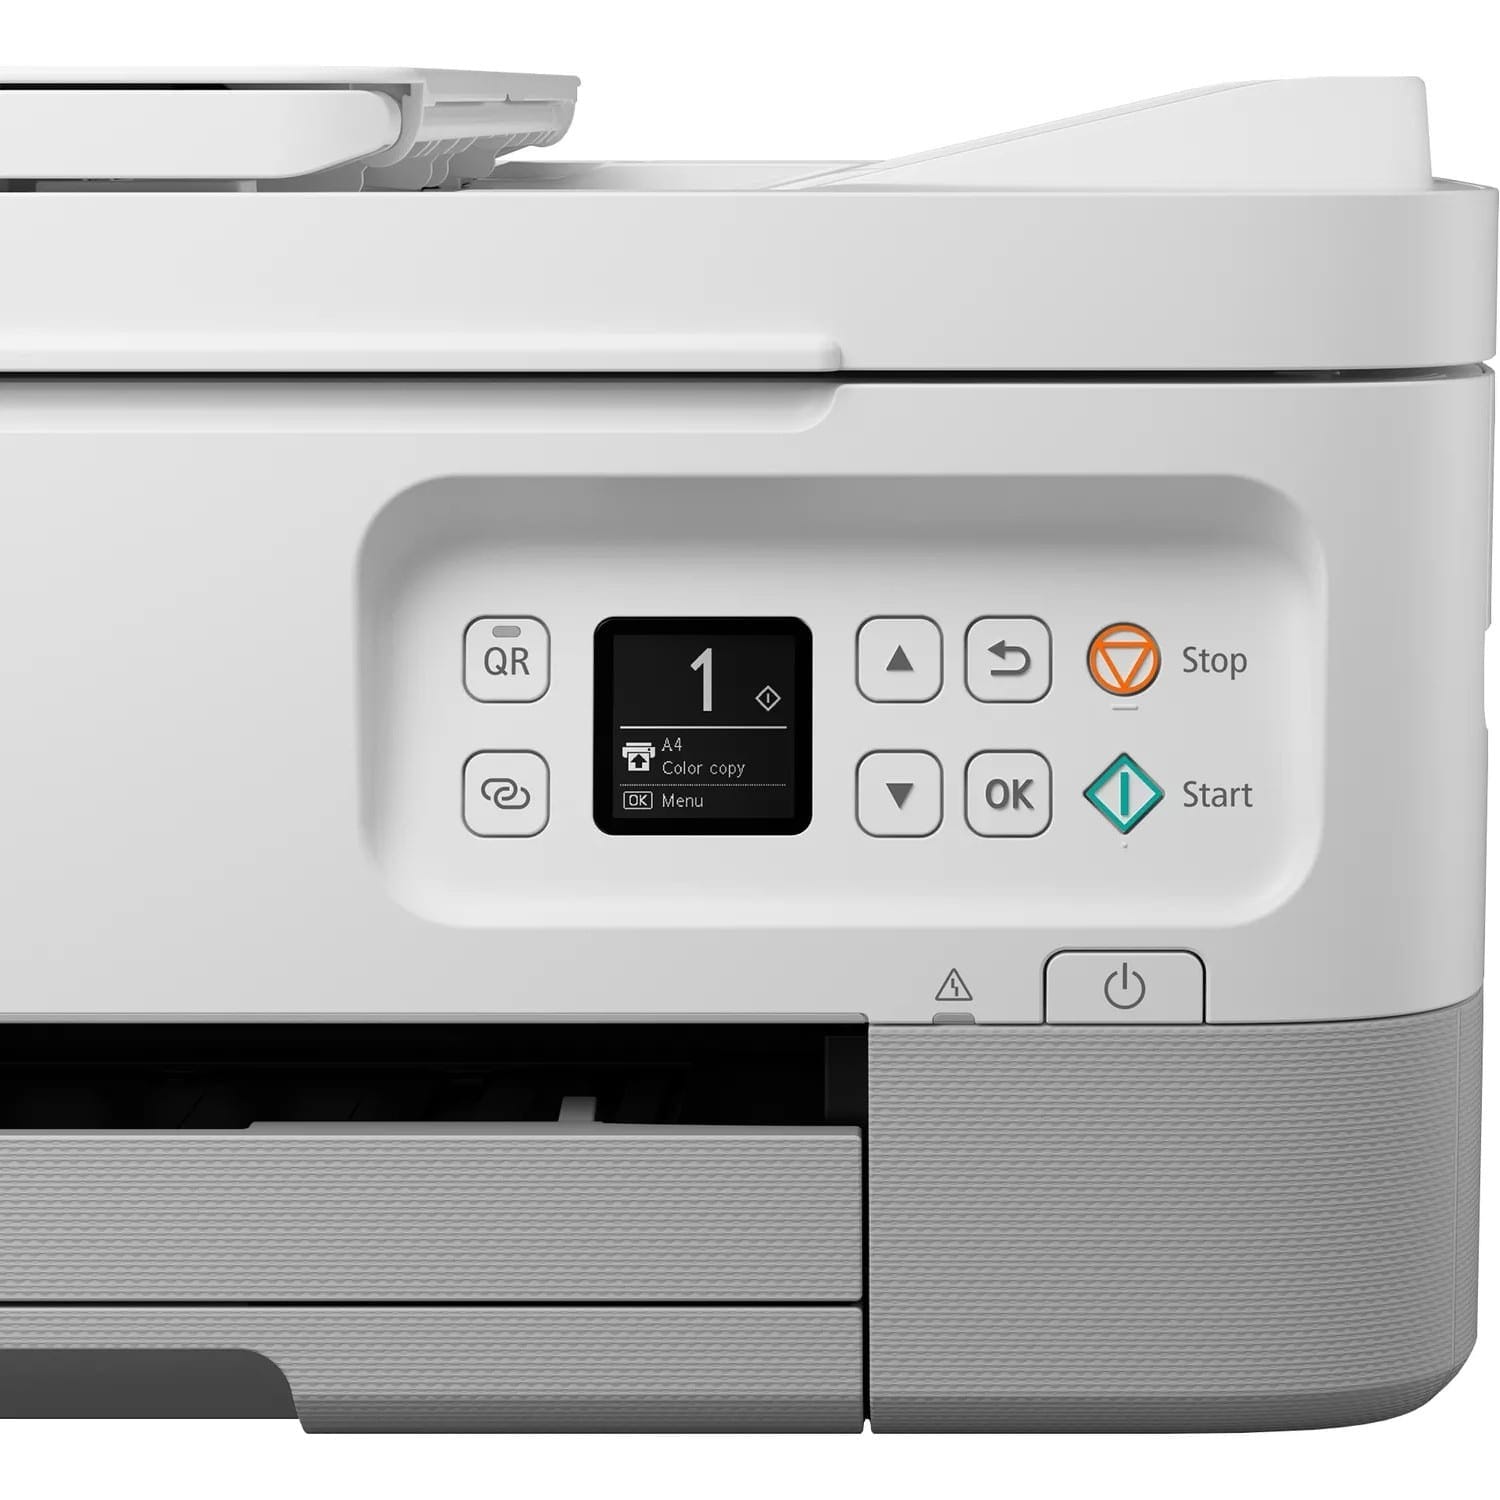 Imprimante jet d'encre CANON Pixma TS7451a (blanche) - Multifonction 3 en 1  - Format A4